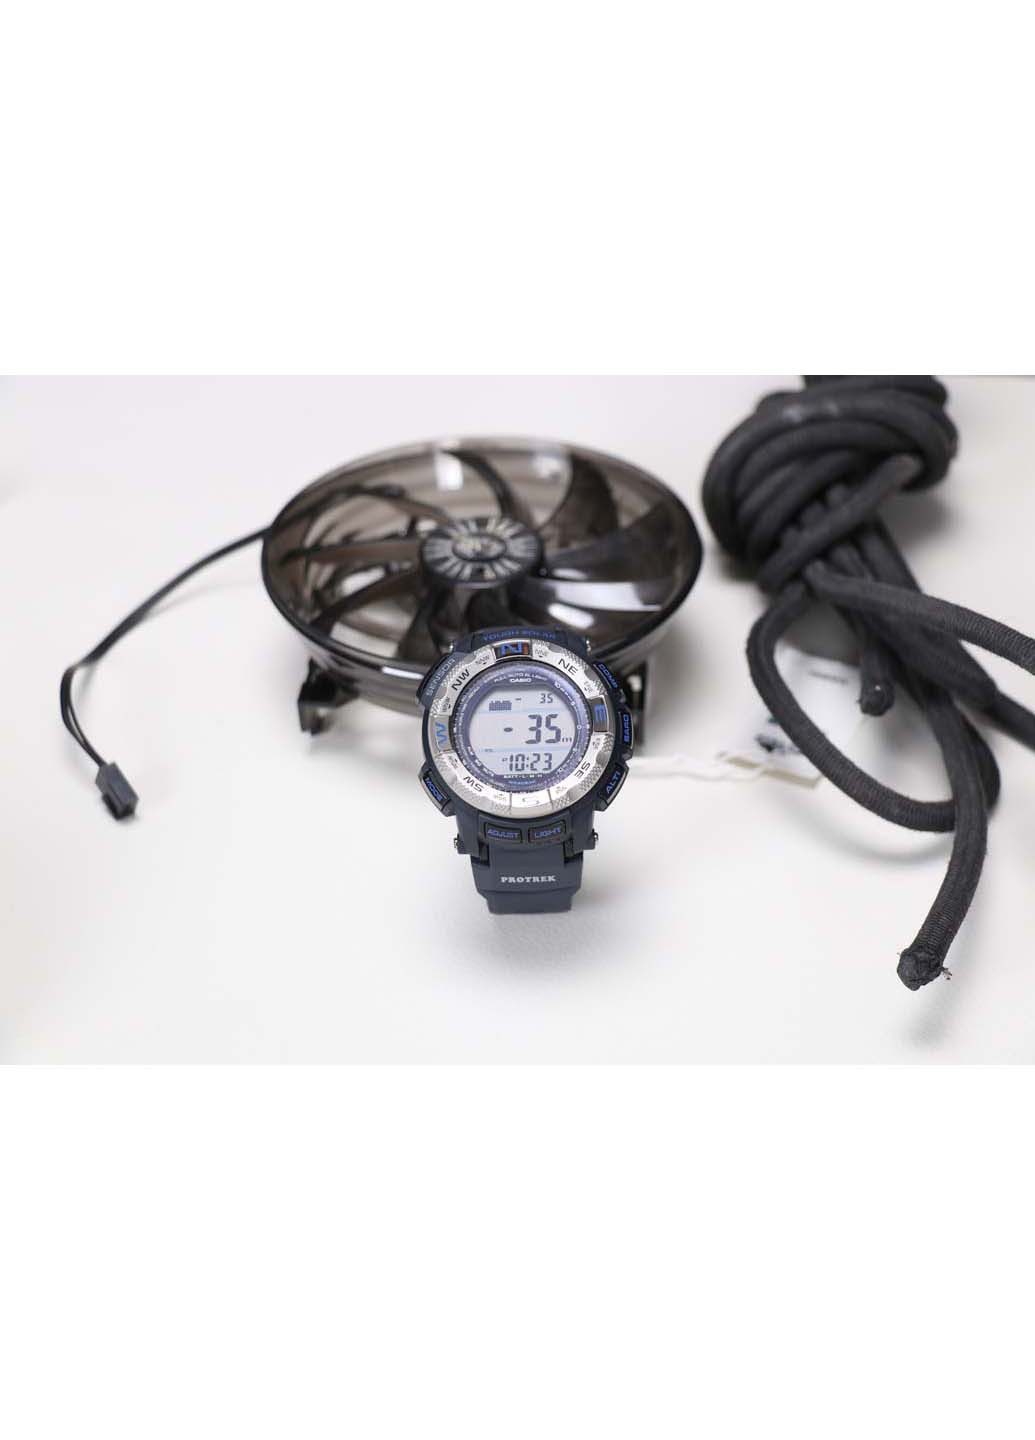 Годинник ProTrek PRG-260-2DR Casio (270932027)